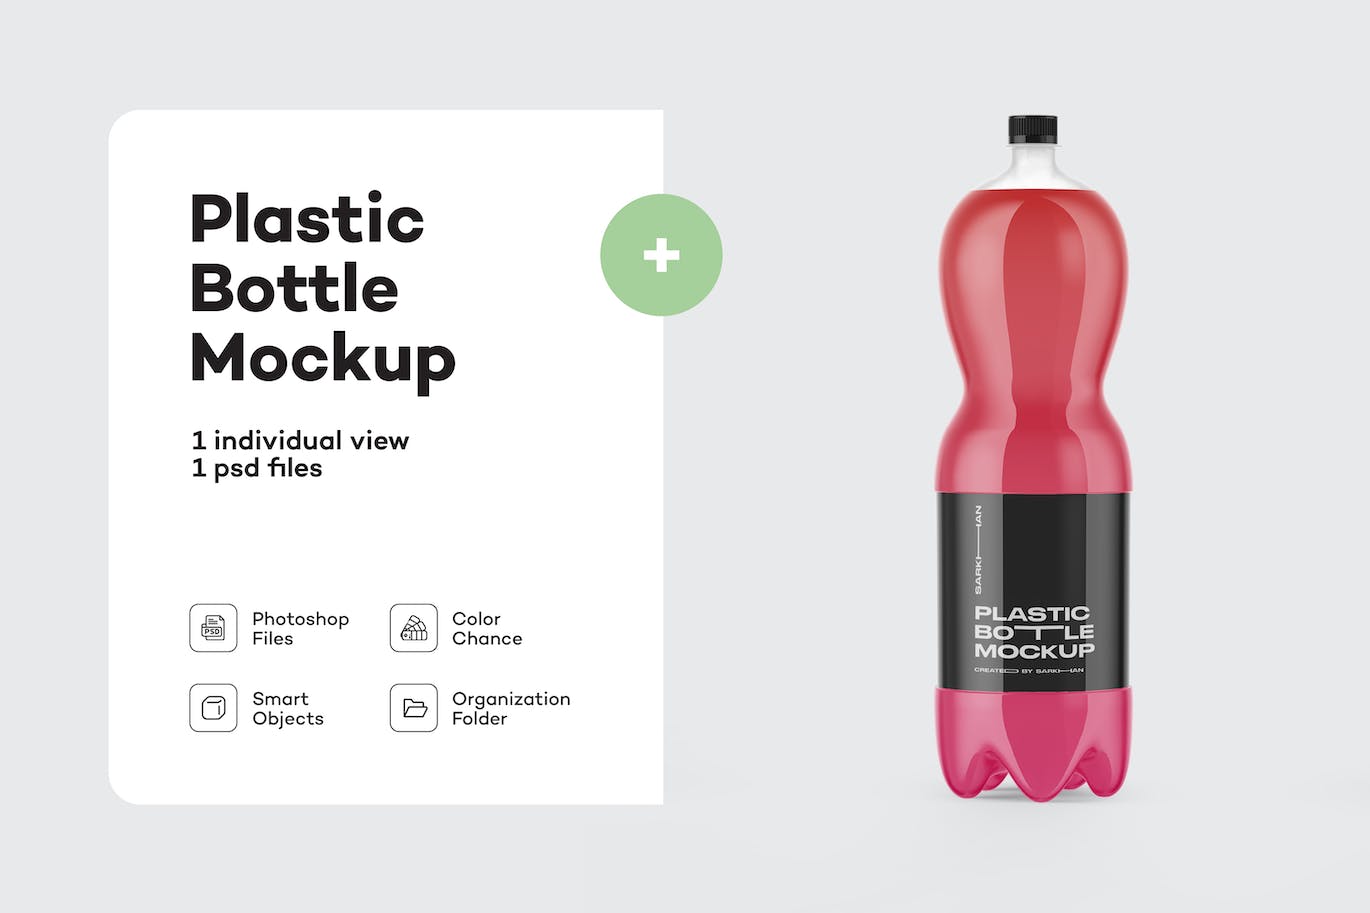 软饮料塑料PET瓶包装设计样机 (PSD)